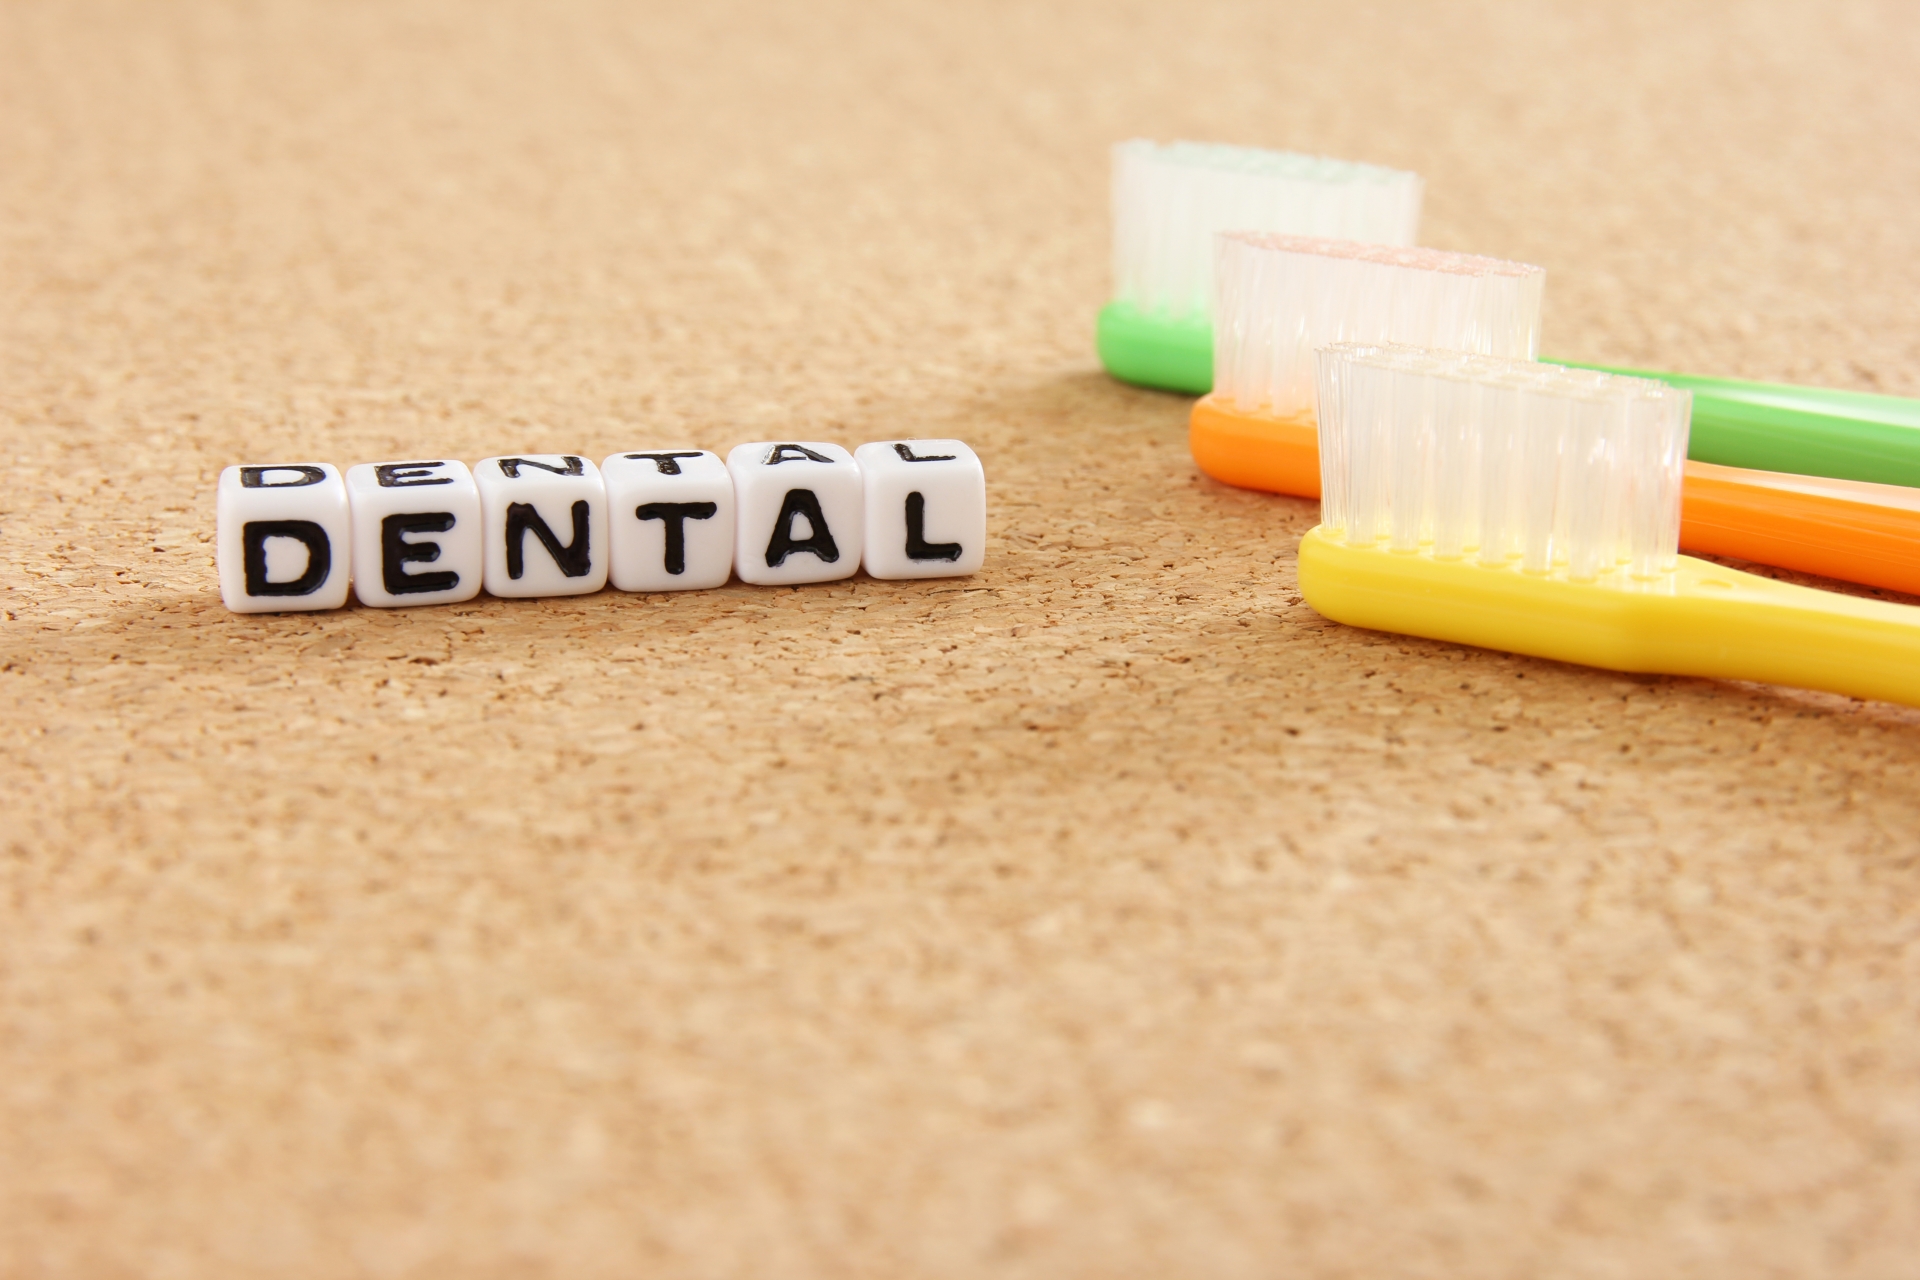 セラミック素材を使用した歯の治療は、通常保険適用外となります。そのため、セラミックと銀歯の違いを踏まえ、歯医者さんとしっかり相談しながら、治療の方針を決めることが一番と言えます。